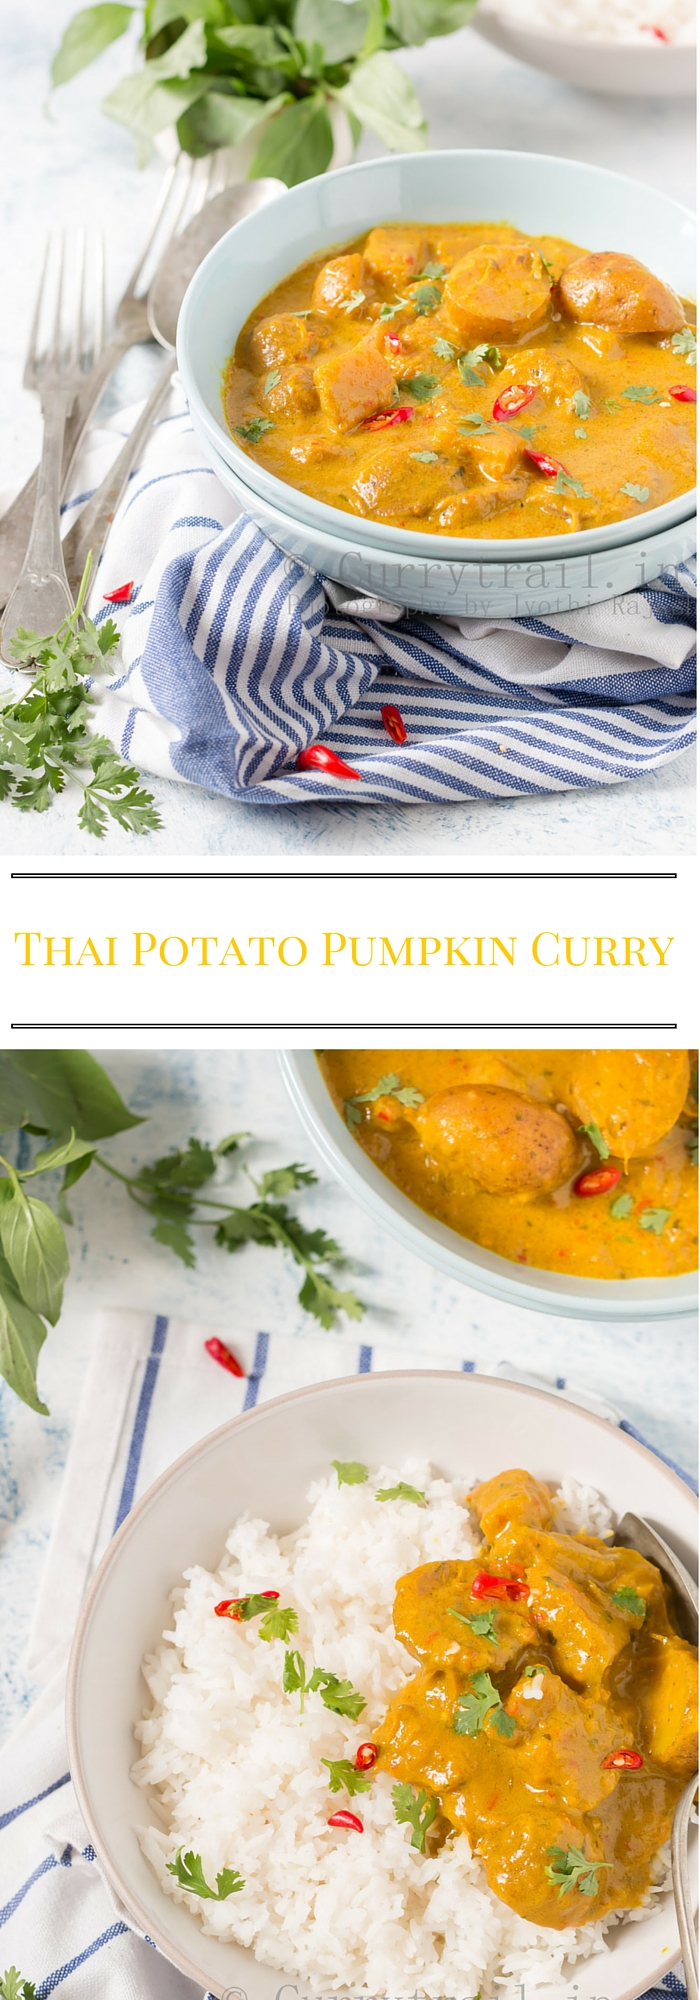 Thai Potato Pumpkin Curry